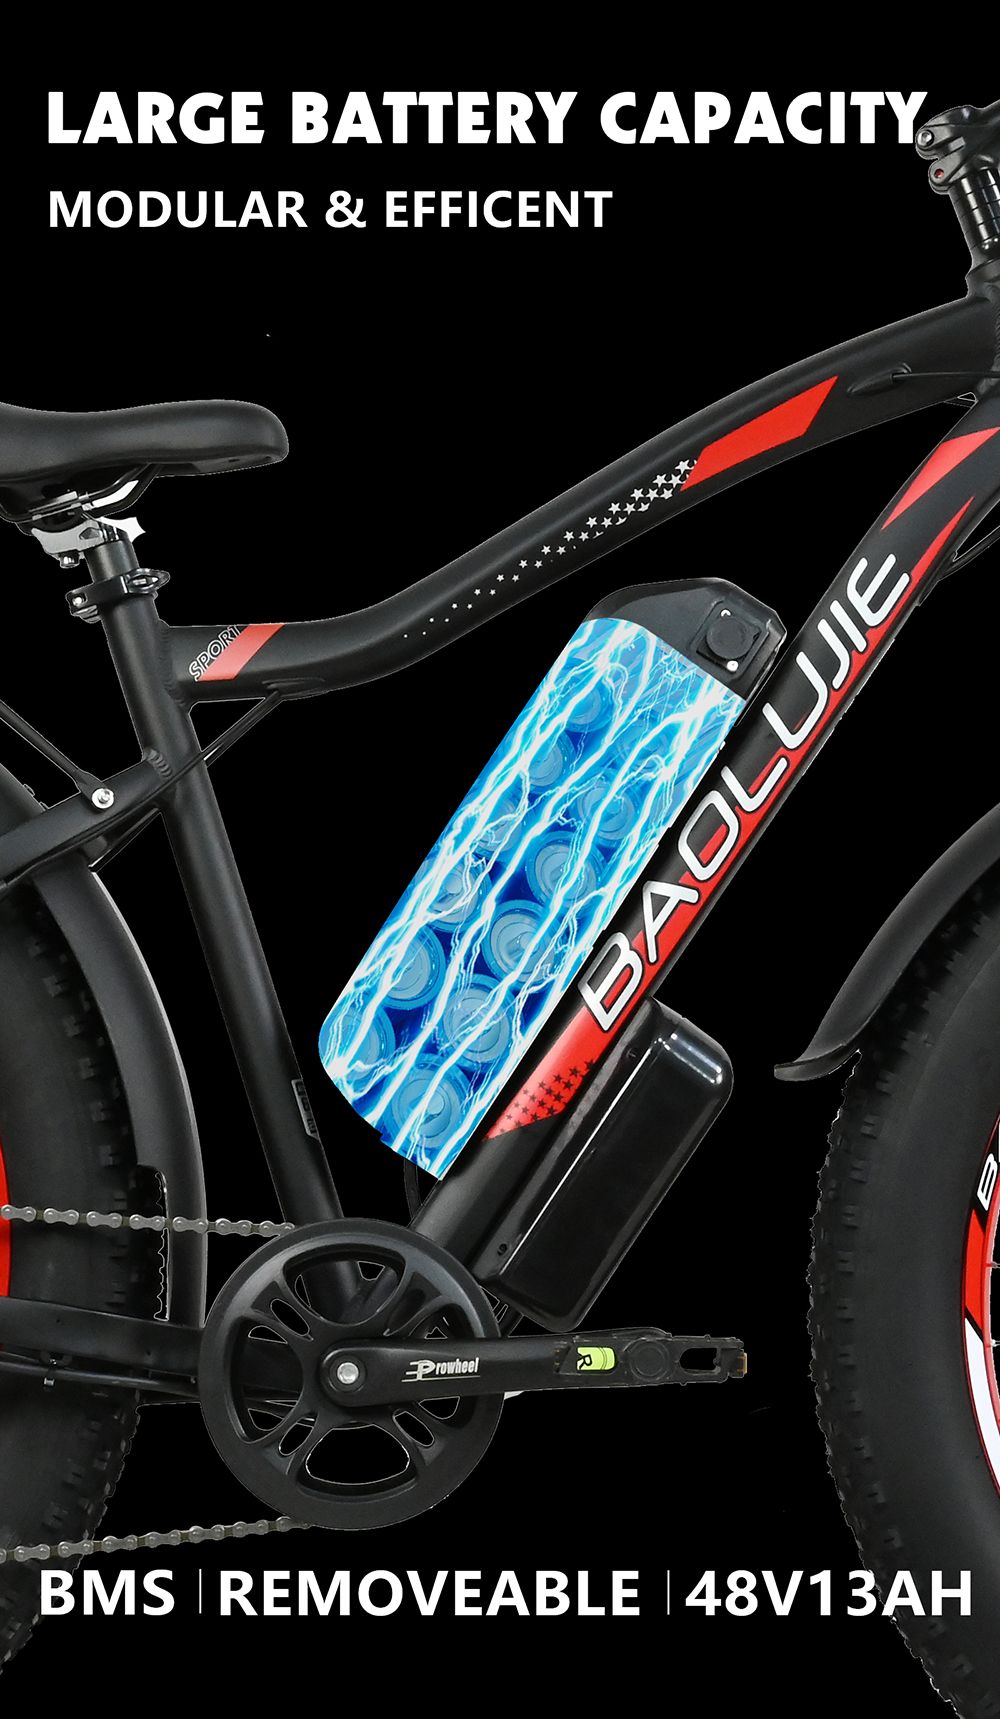 Bicicleta elétrica BAOLUJIE DP2619, pneu gordo de 26 * 4.0 polegadas 750W Motor 48V 13Ah Bateria 45km / h Velocidade máxima 45km Alcance máximo SHIMANO Visor LCD de 7 velocidades - preto